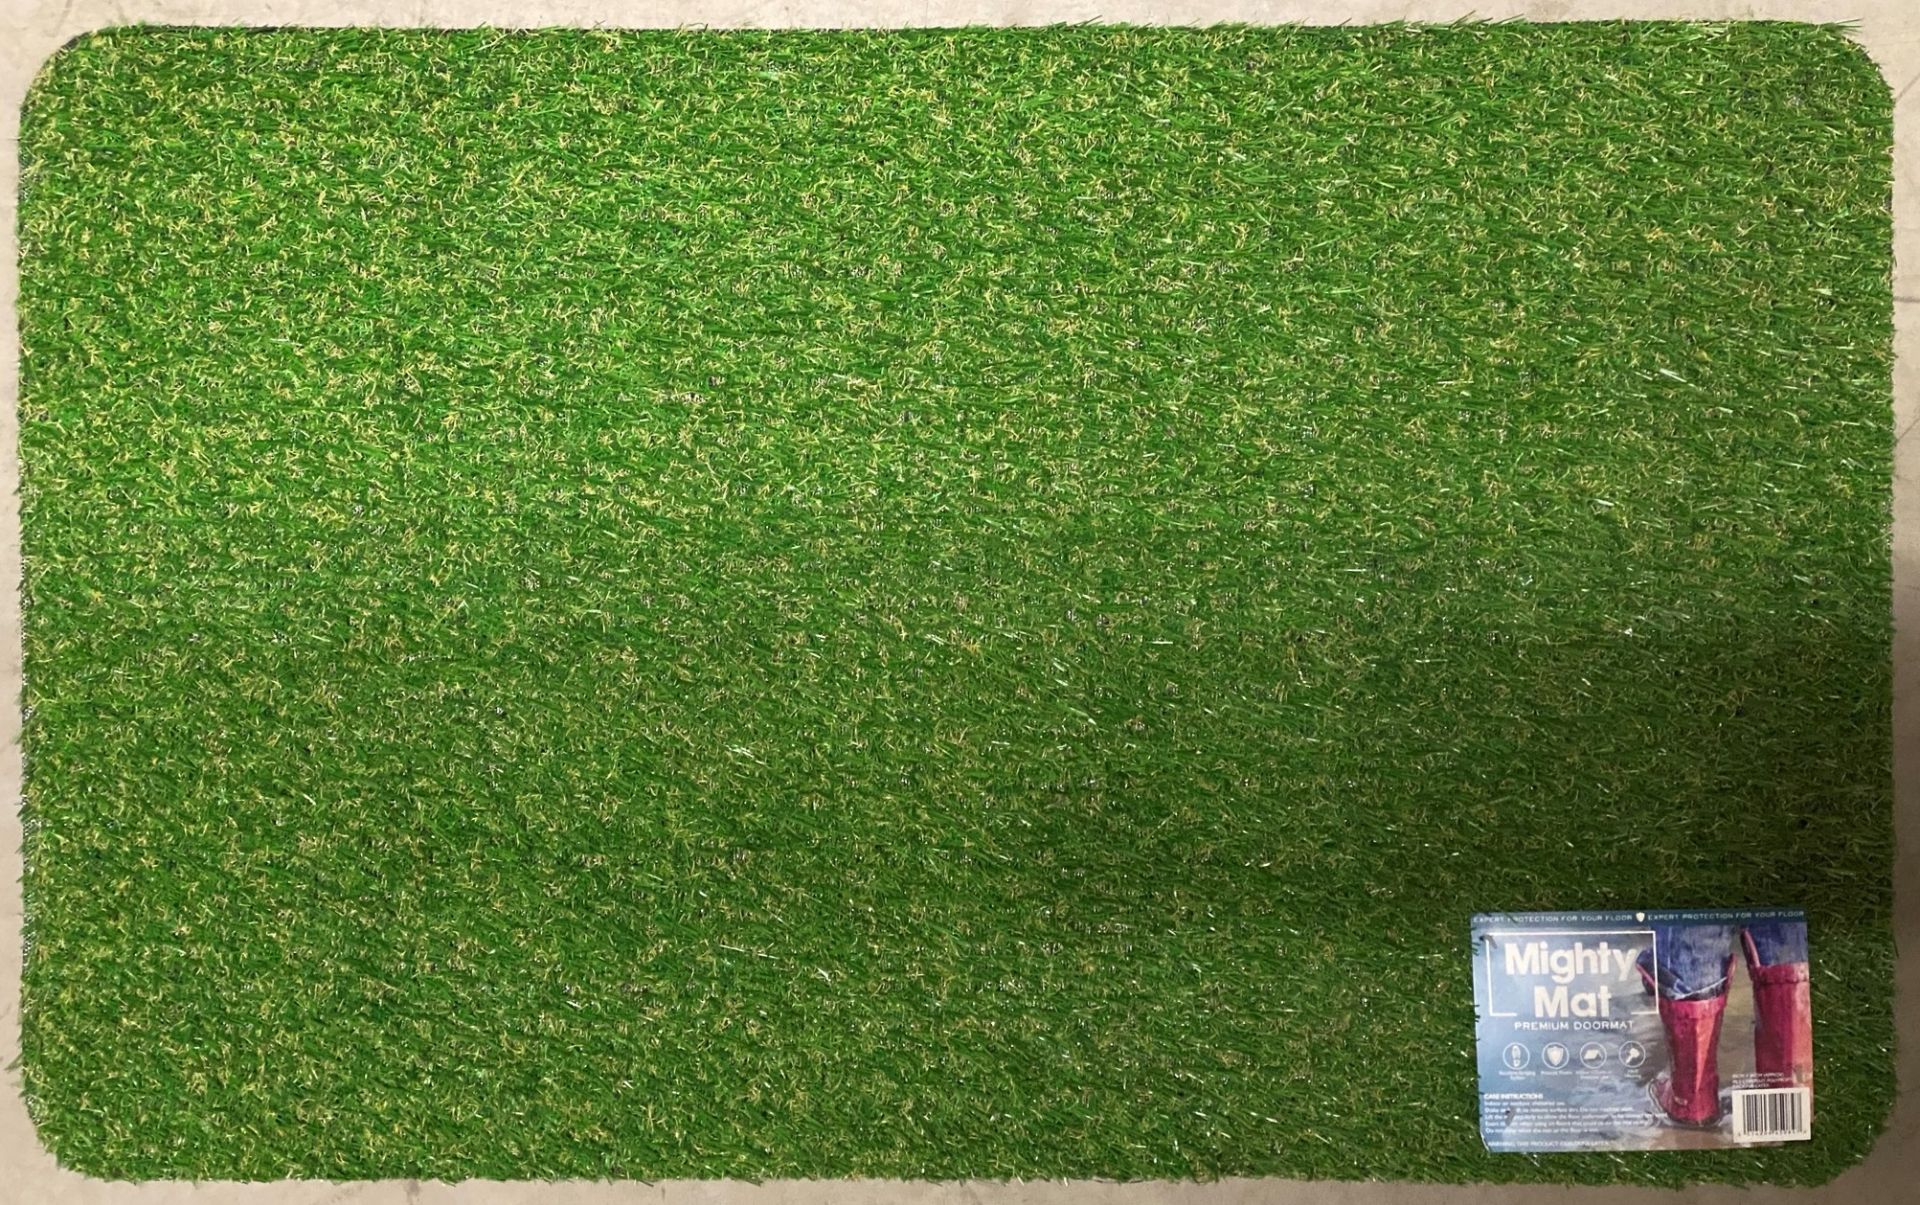 12 x Mighty Mat Premium Polypropylene Grass Effect Doormats - 50cm x 80cm